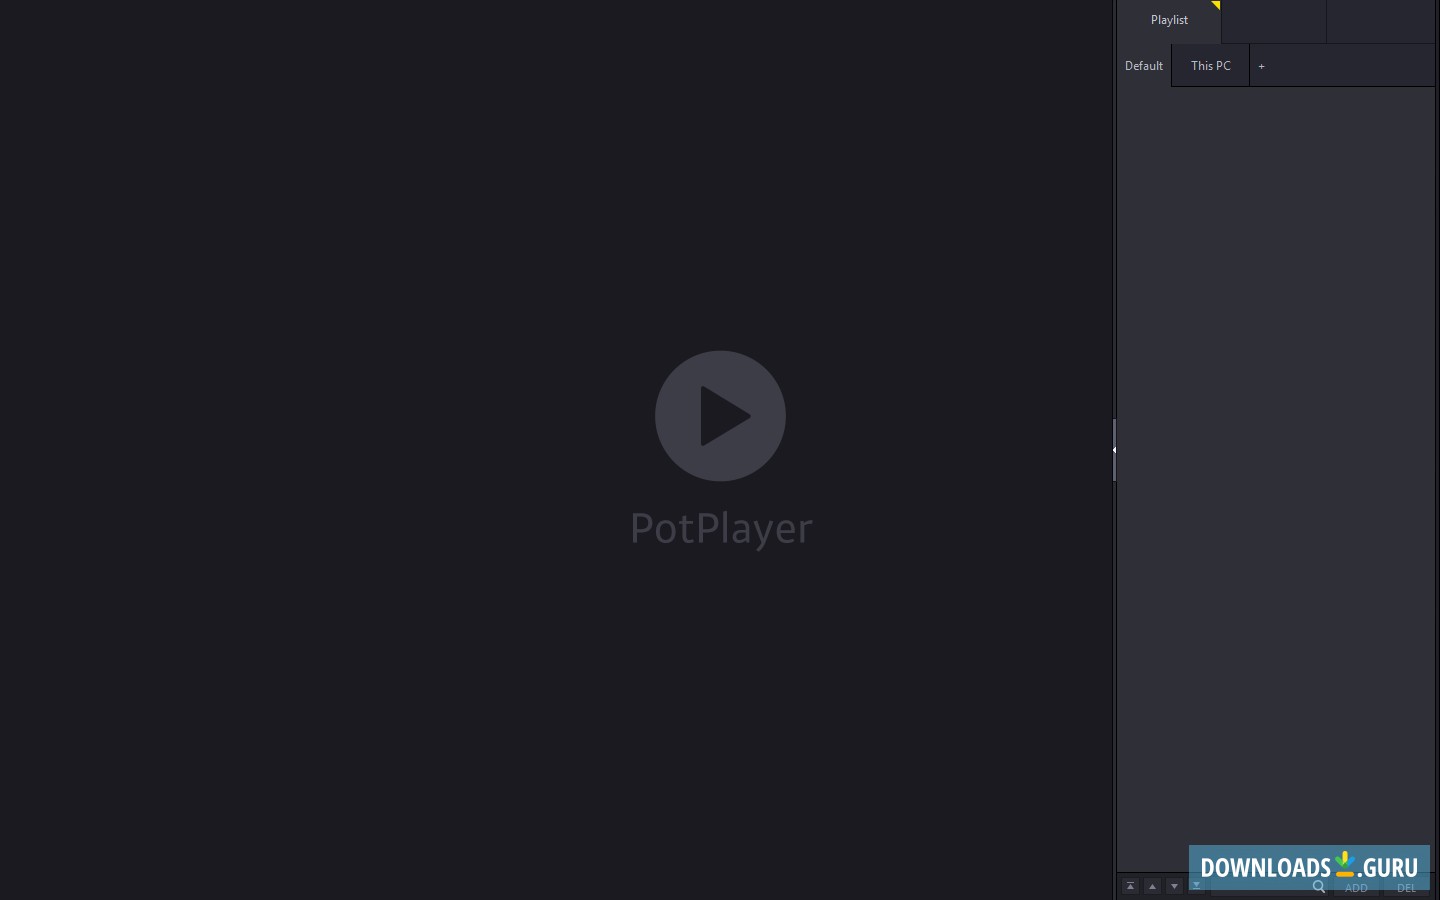 download potplayer 64 bit for windows 10